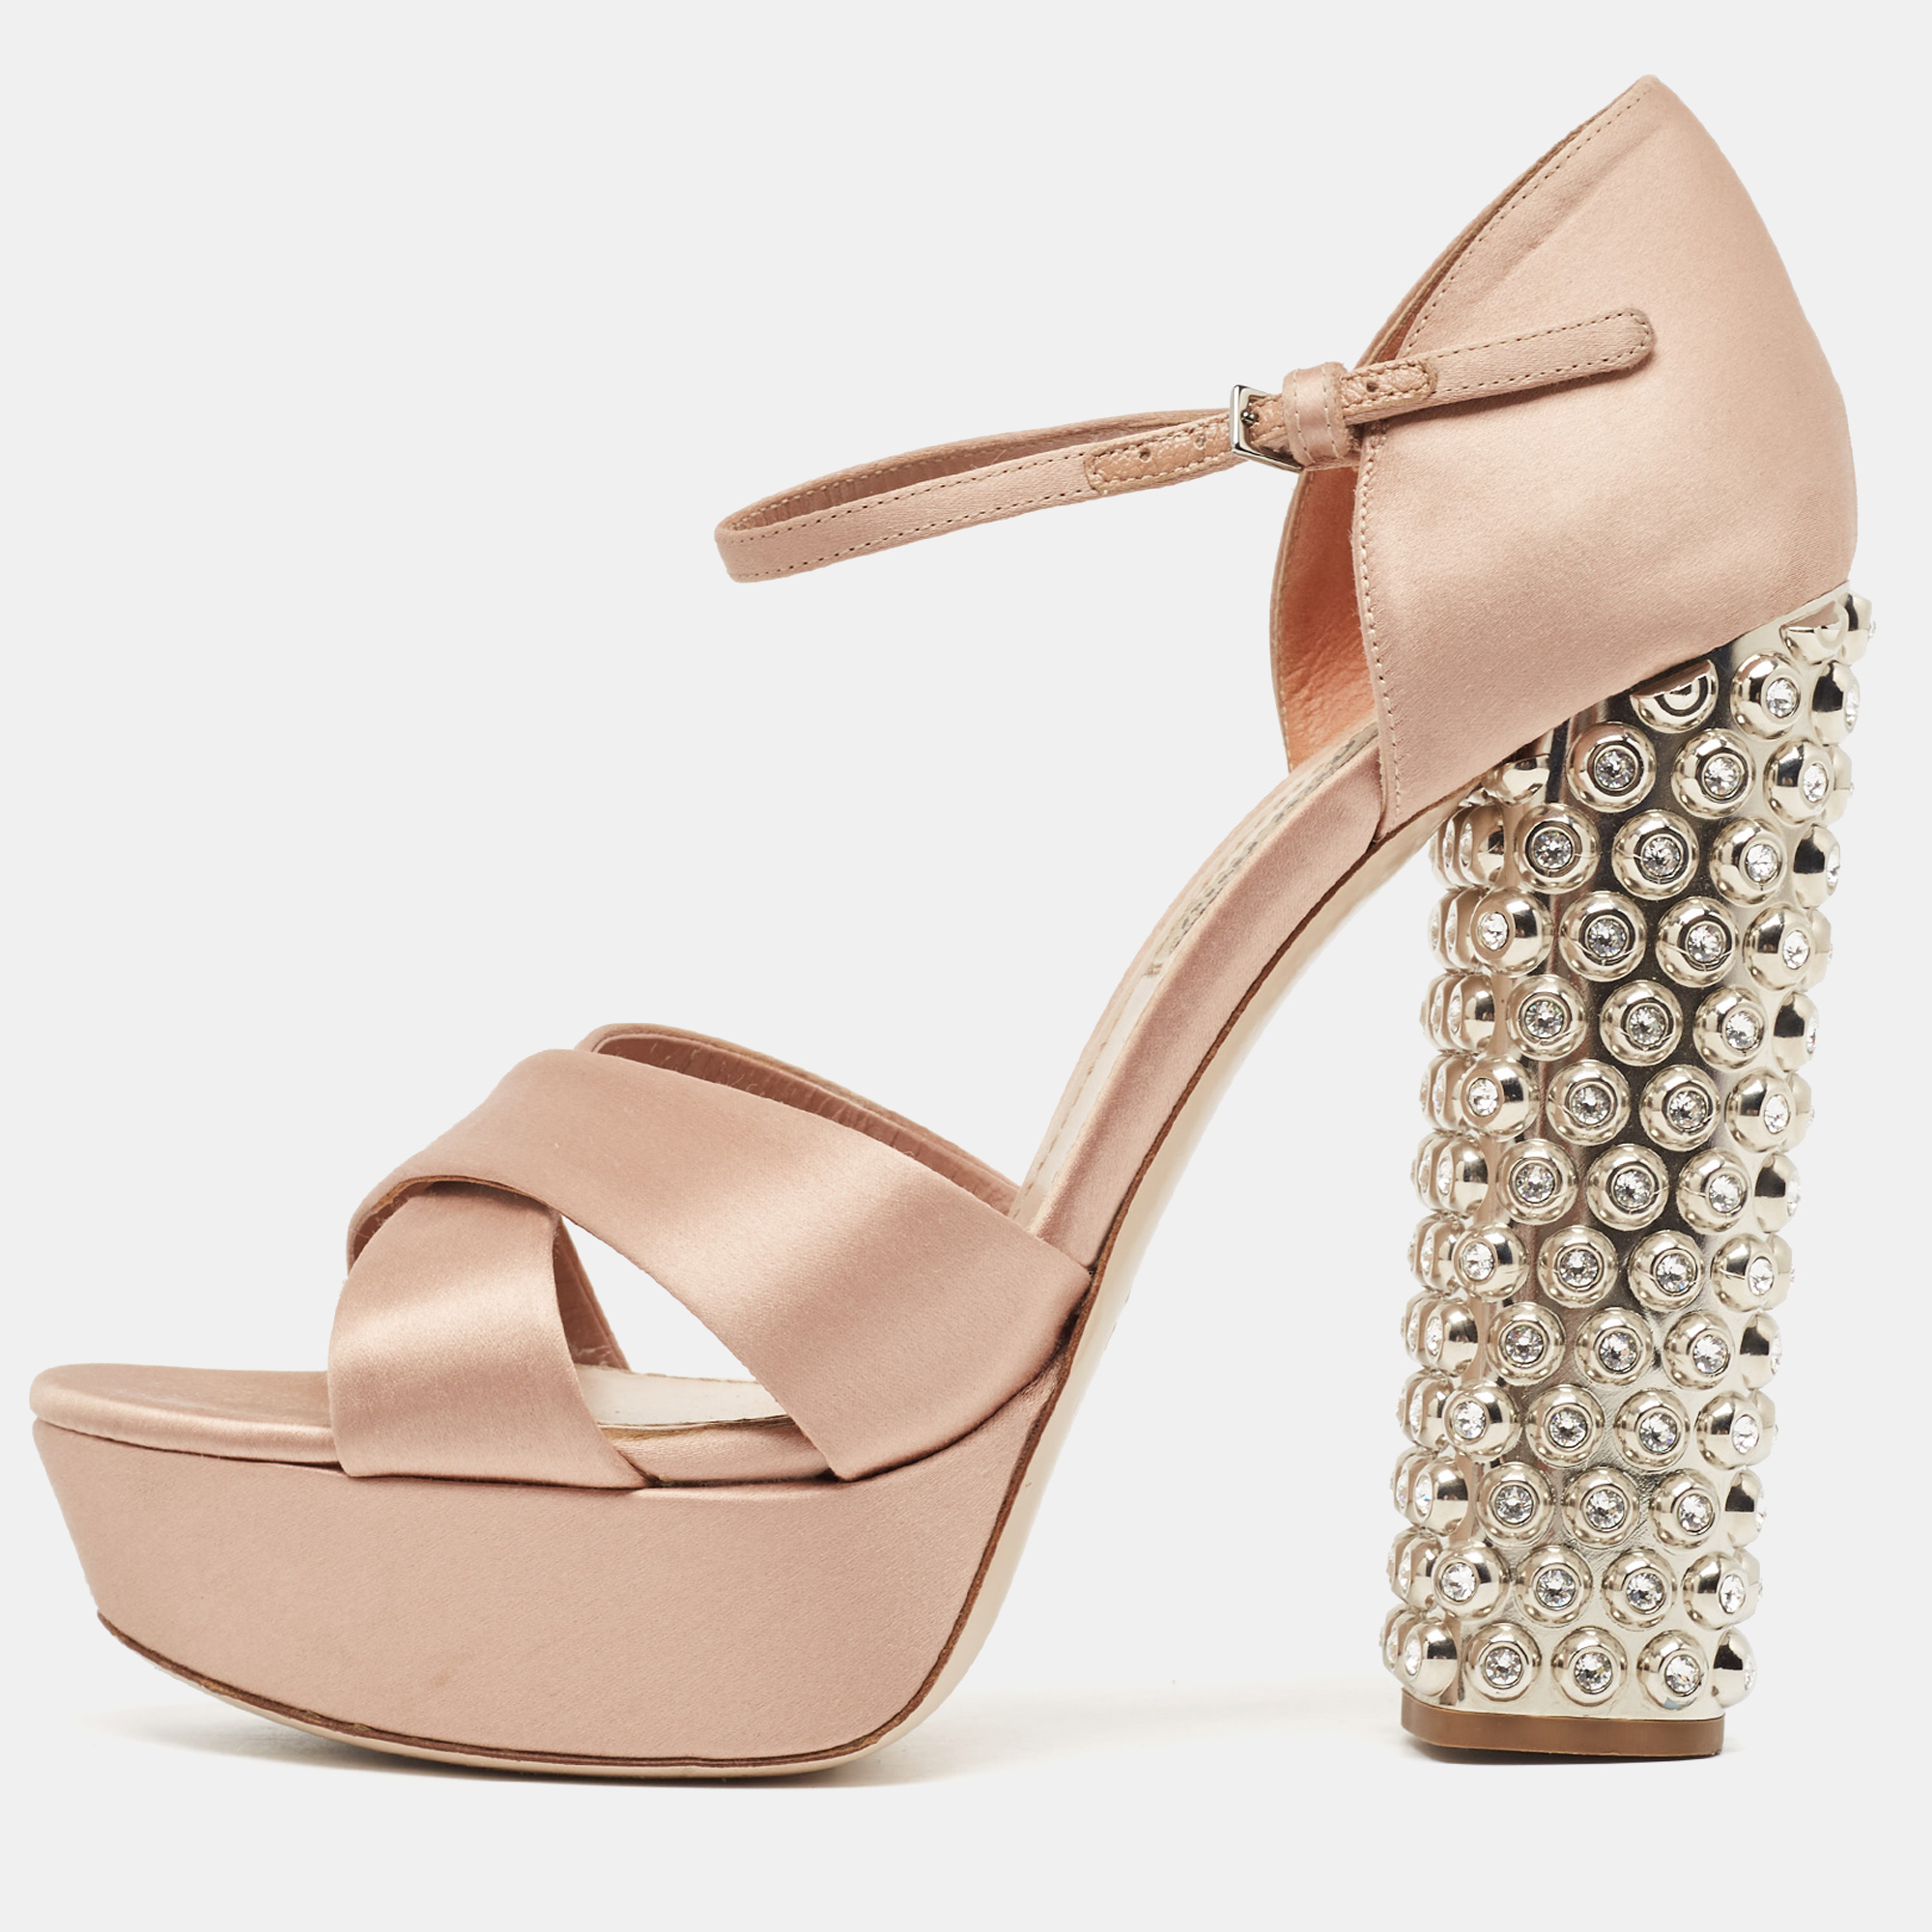 Miu miu pink satin crystal embellished platform ankle strap sandals size 38